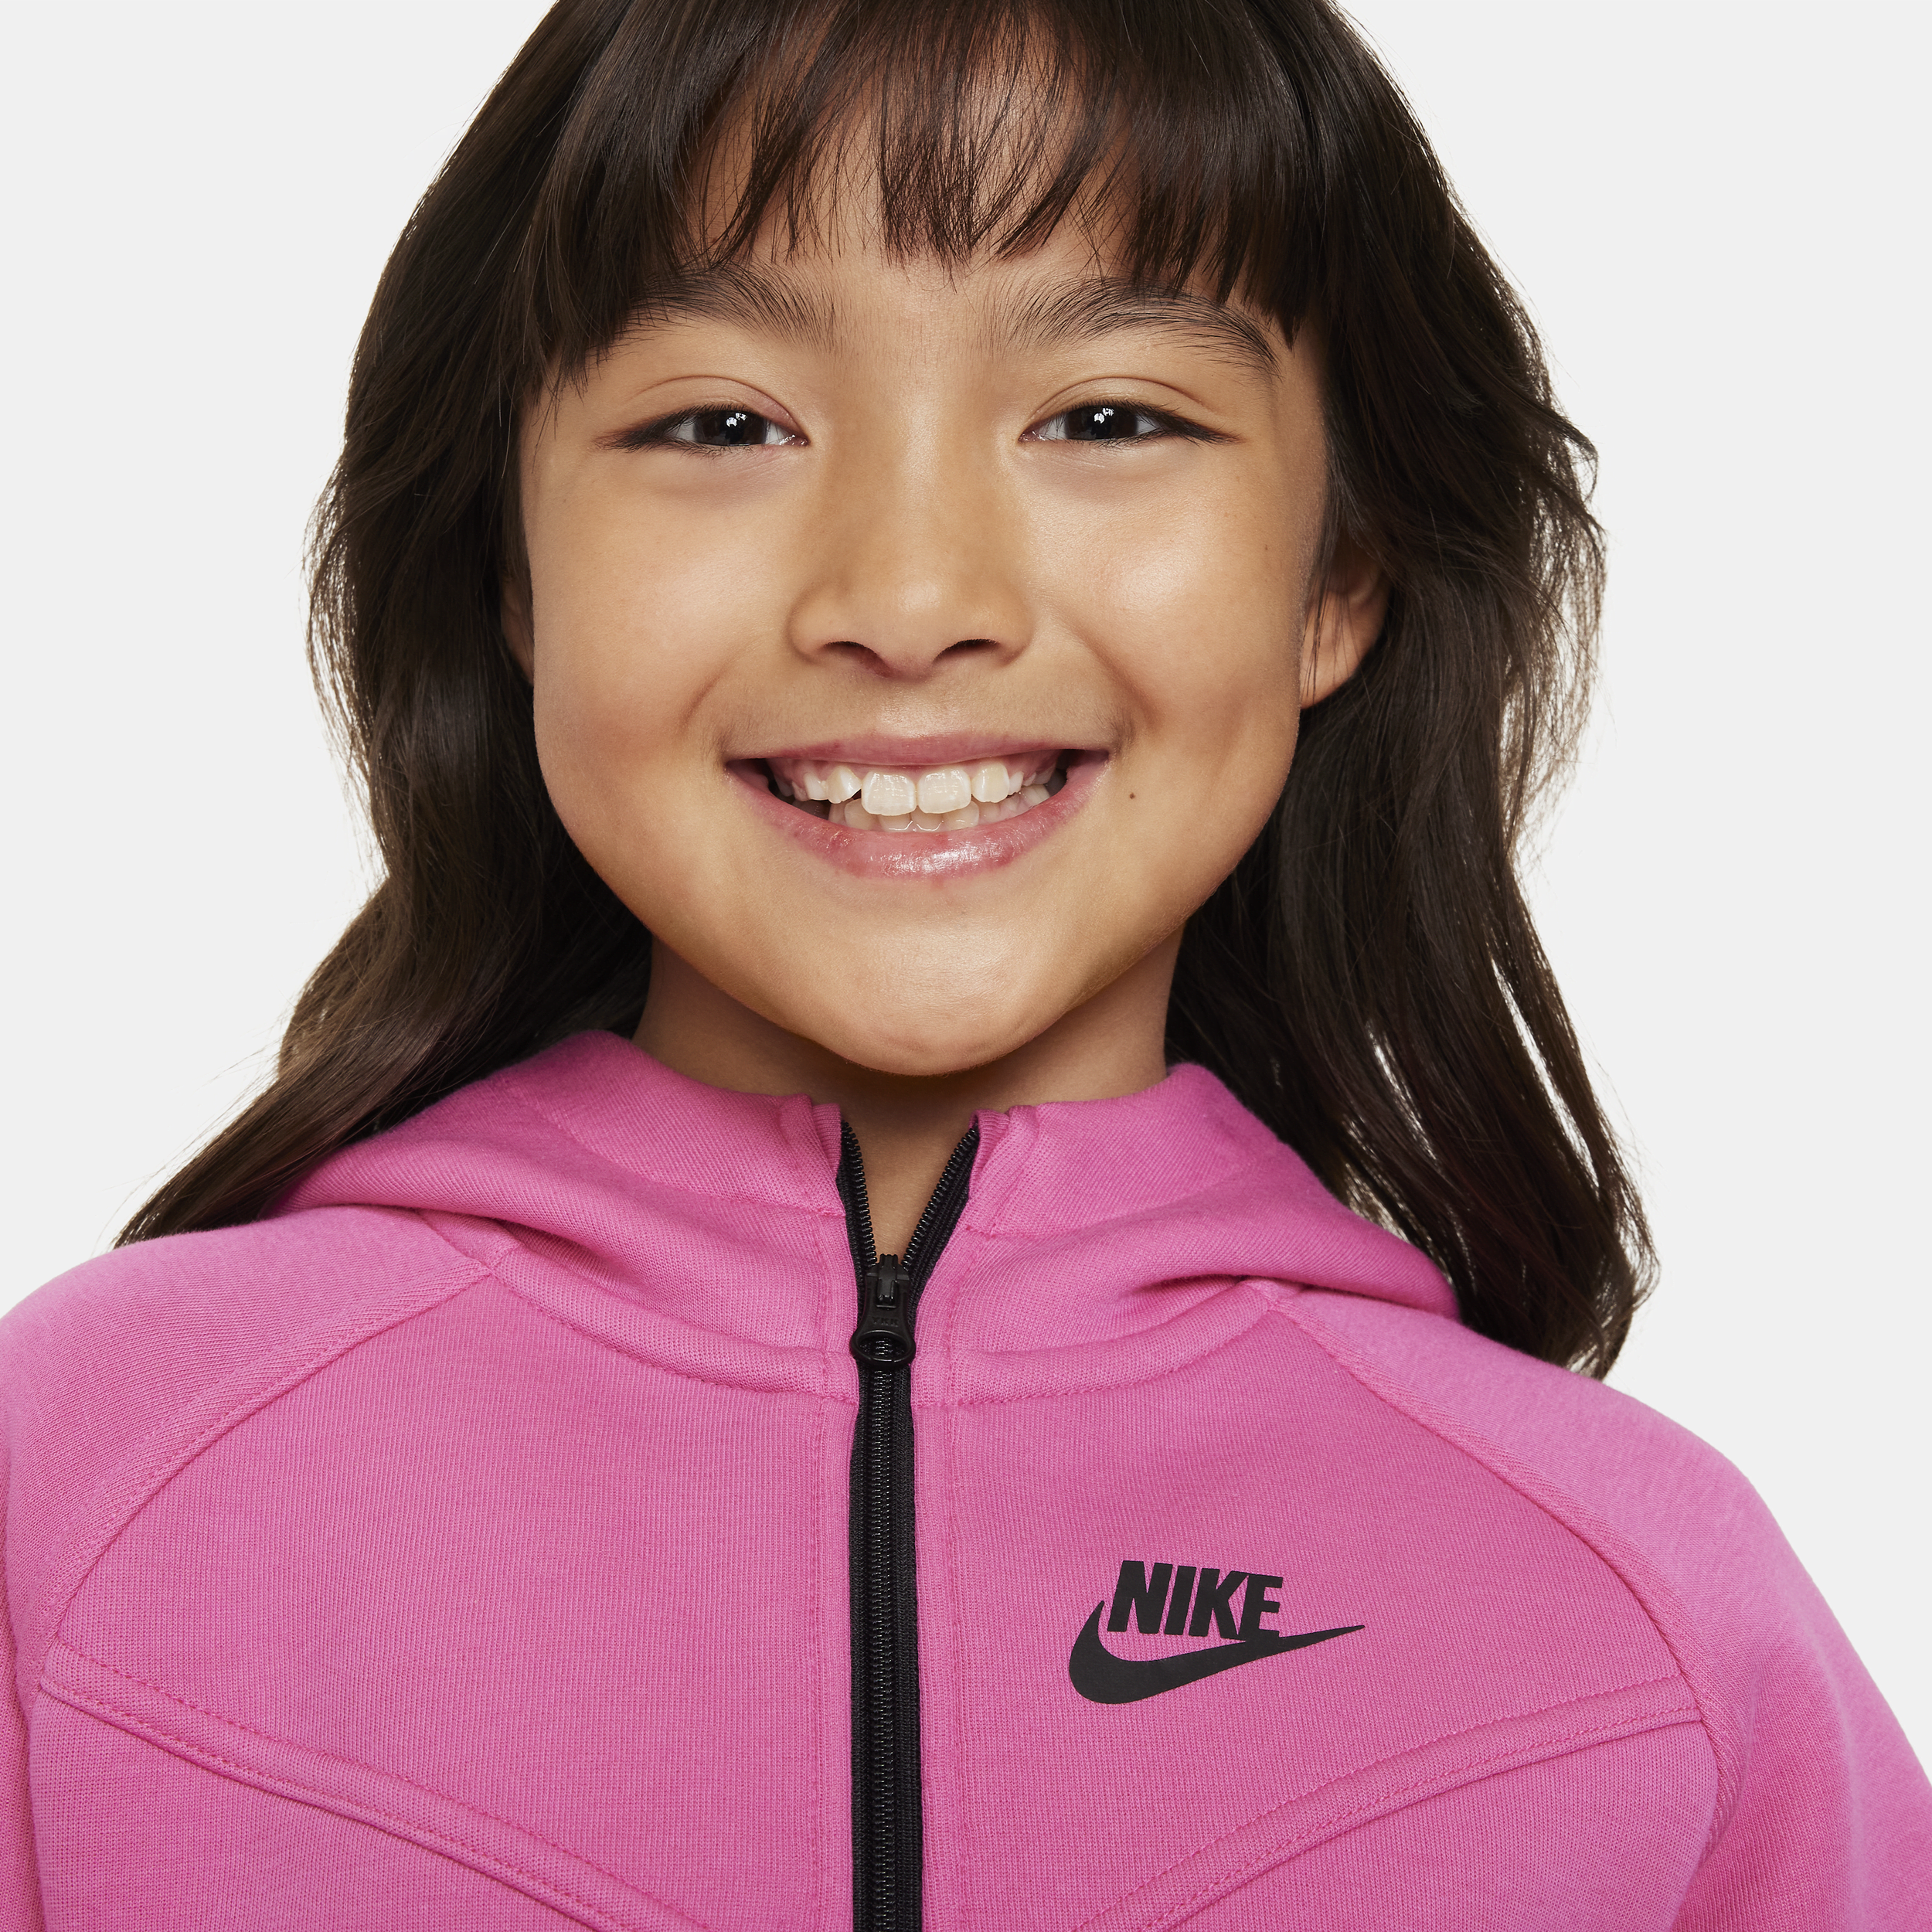 Nike Sportswear Tech Fleece Hoodie met rits over de hele lengte voor meisjes Roze